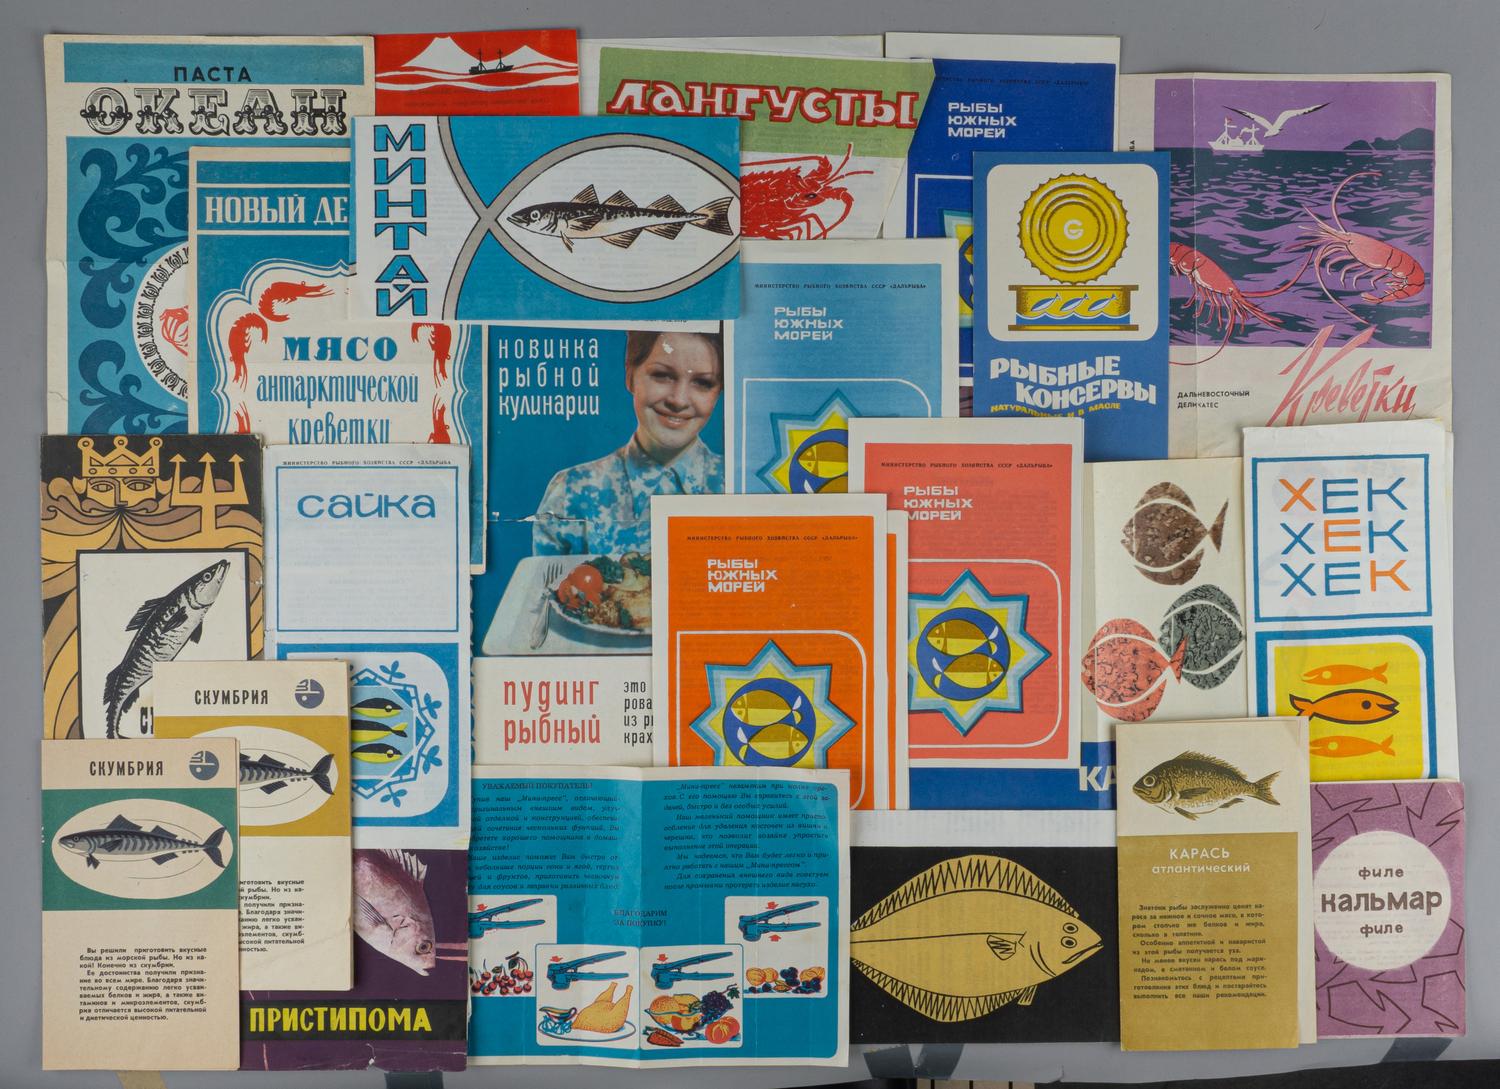 24 рекламных листа морепродуктов. СССР, 1970-е годы.